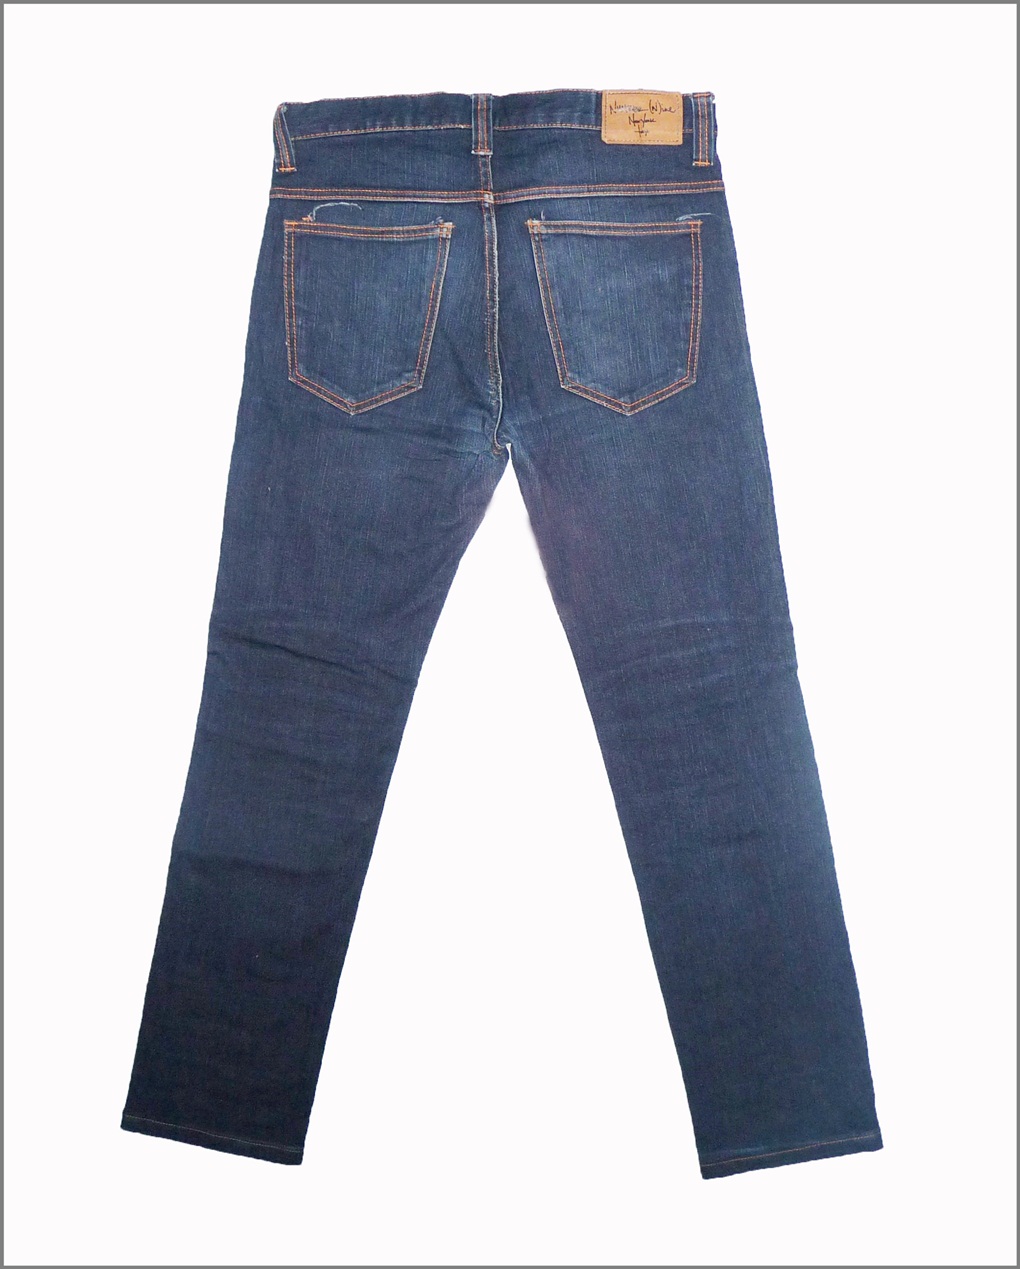 Dallek Shop - Bundle Online Shoping: Number Nine Jeans